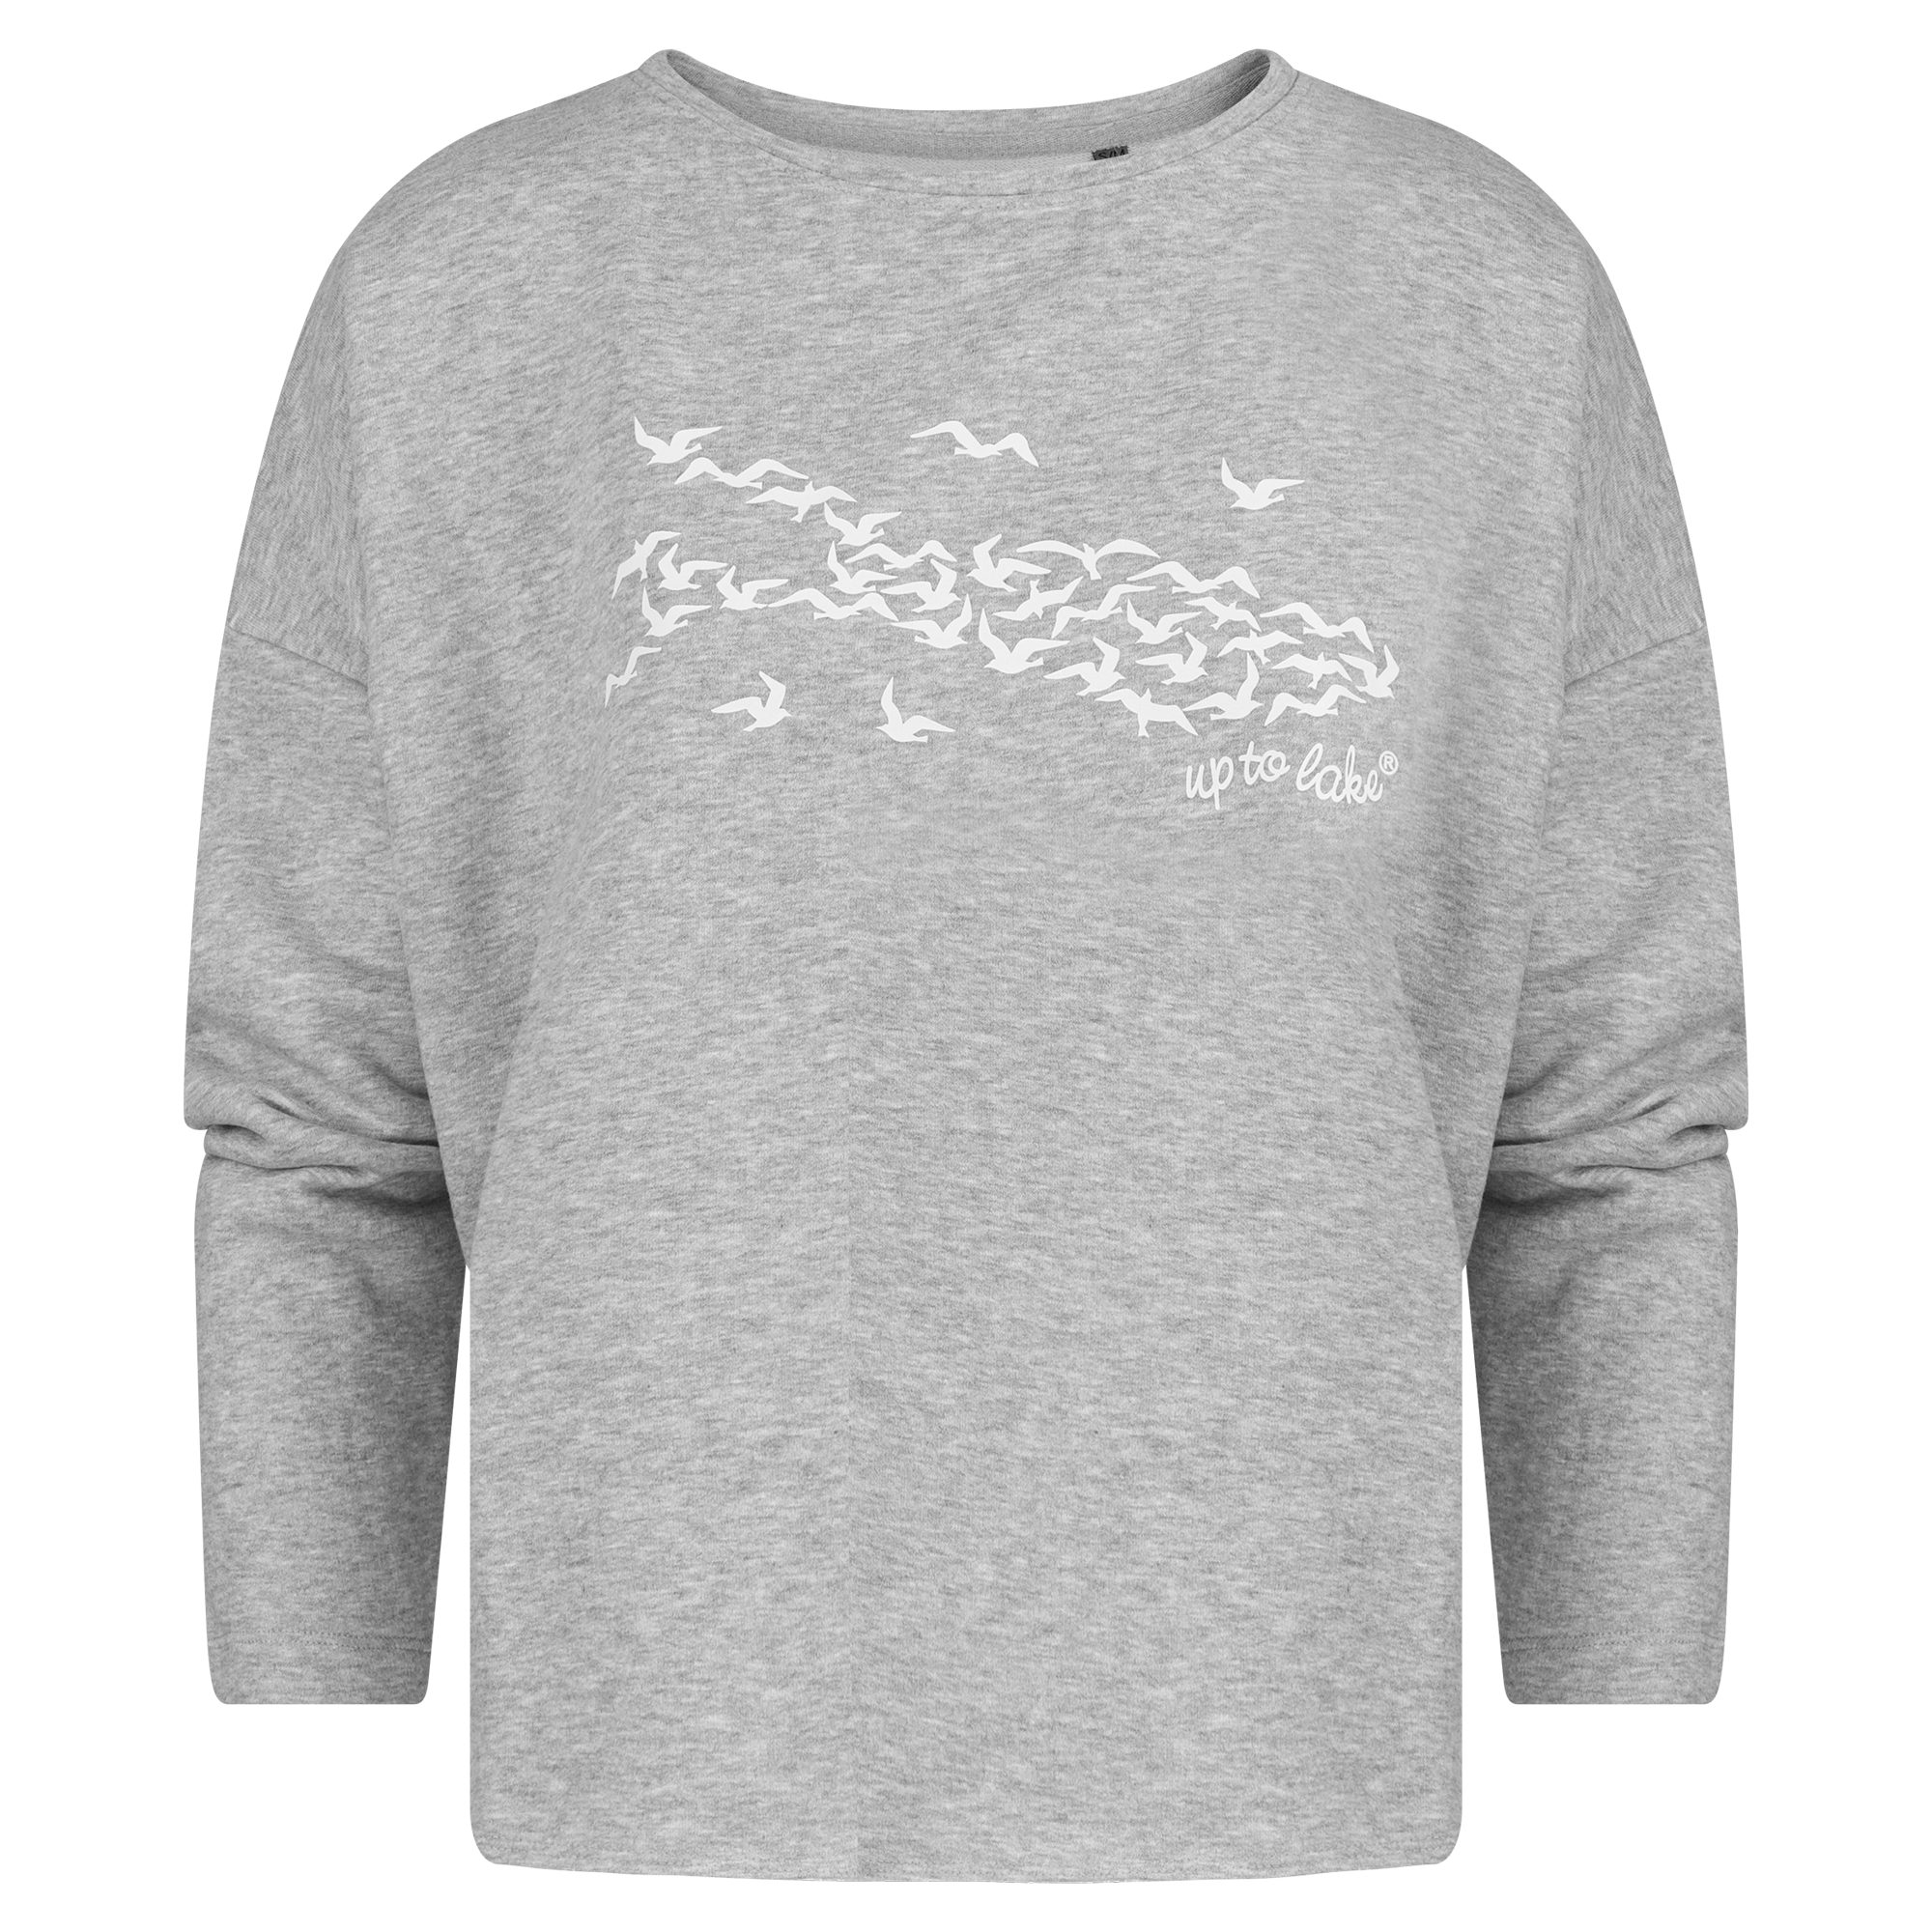 uptolake design Sweatshirt für Damen aus weichem Baumwollstoff mit "Mövensee-Bodensee" Design Grau/Weiß